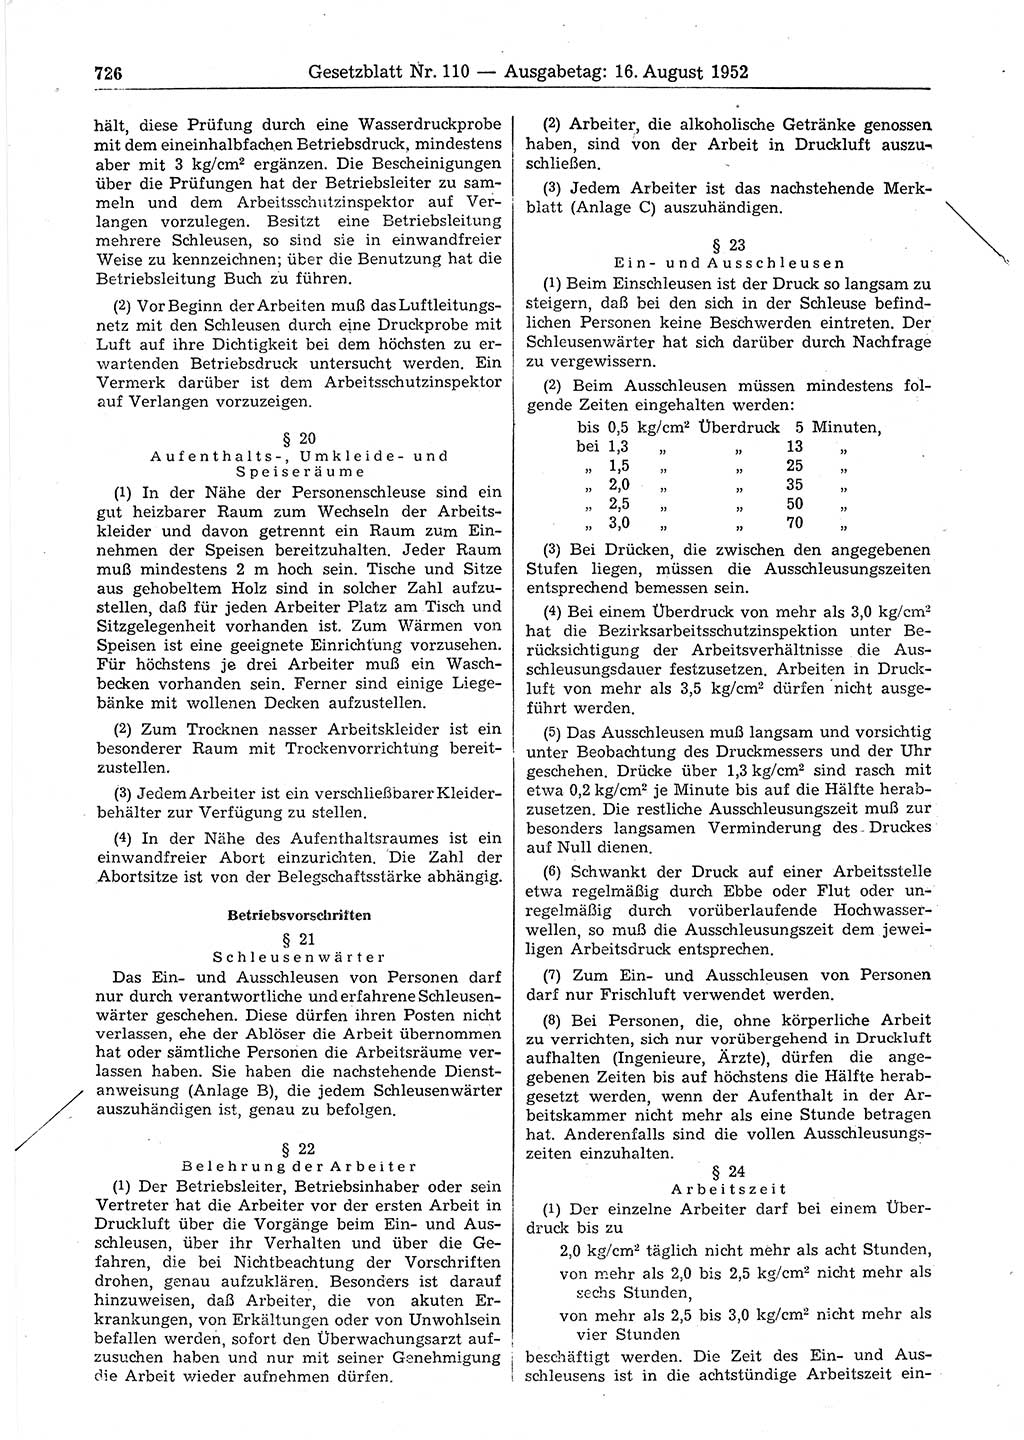 Gesetzblatt (GBl.) der Deutschen Demokratischen Republik (DDR) 1952, Seite 726 (GBl. DDR 1952, S. 726)